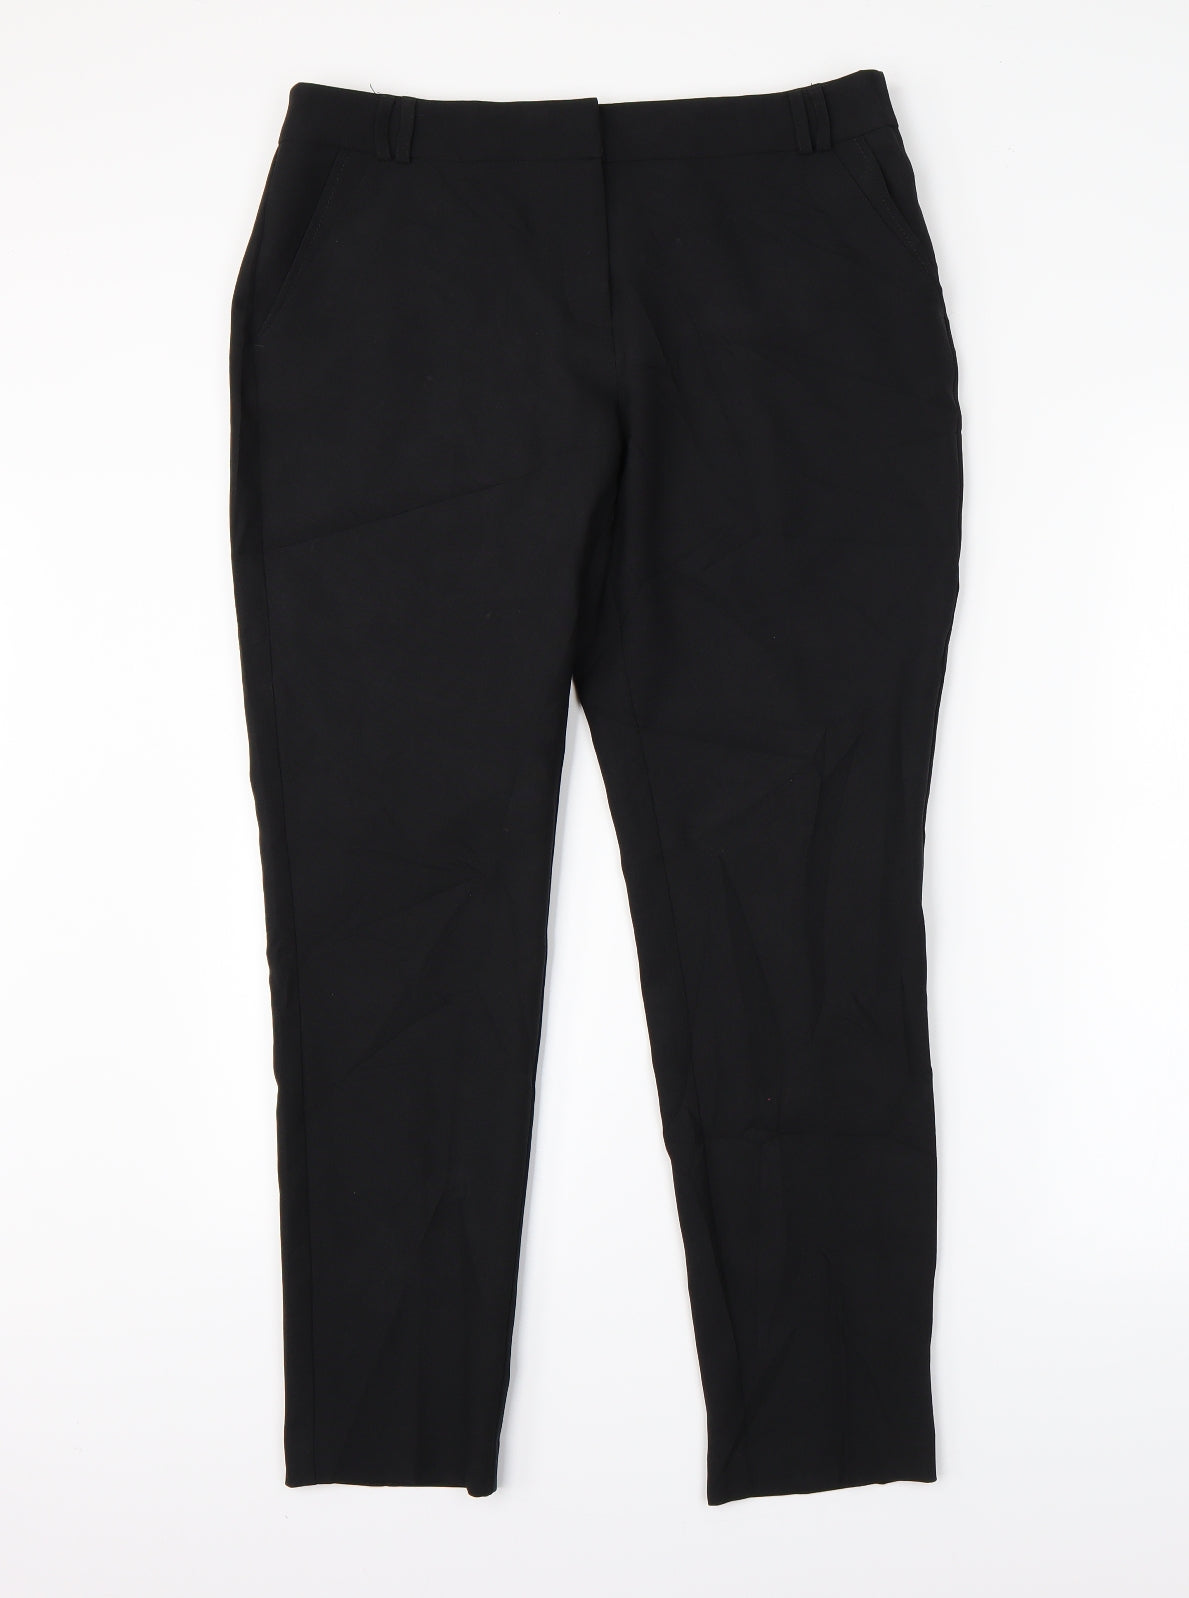 Atmosphere Womens Black Trouser Suit Suit Trousers Size 12 L28 in – Preworn  Ltd